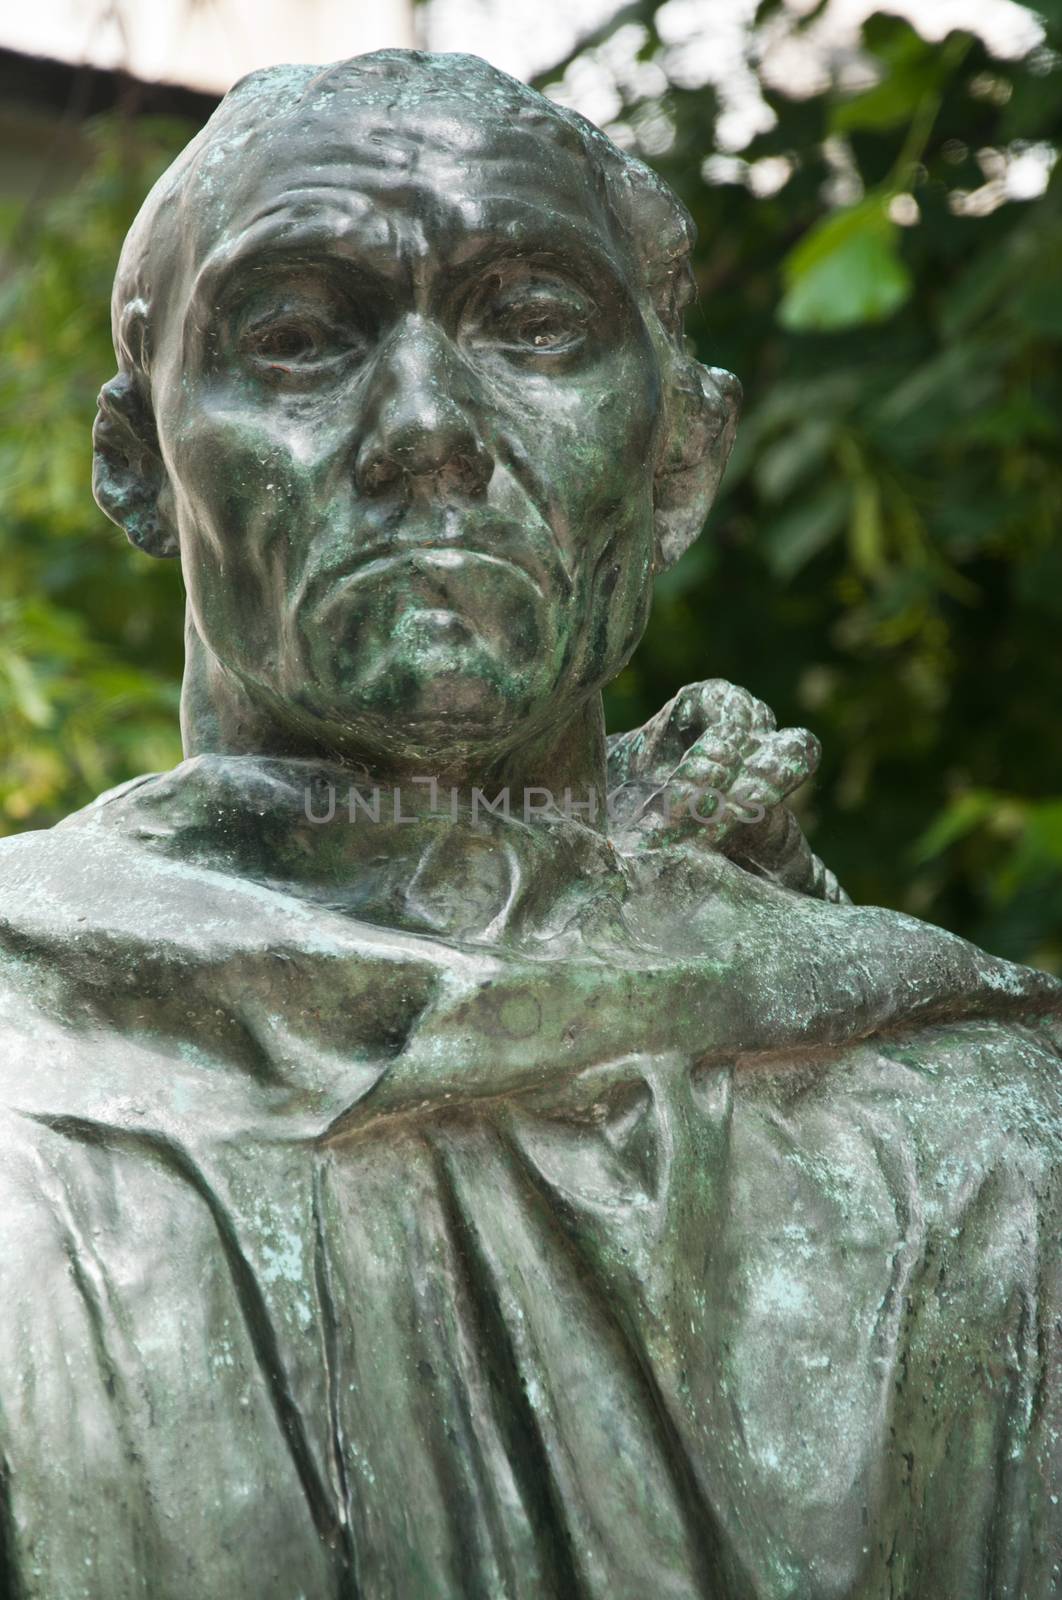 statue in Rodin museum in Paris - taken 14 June 2013